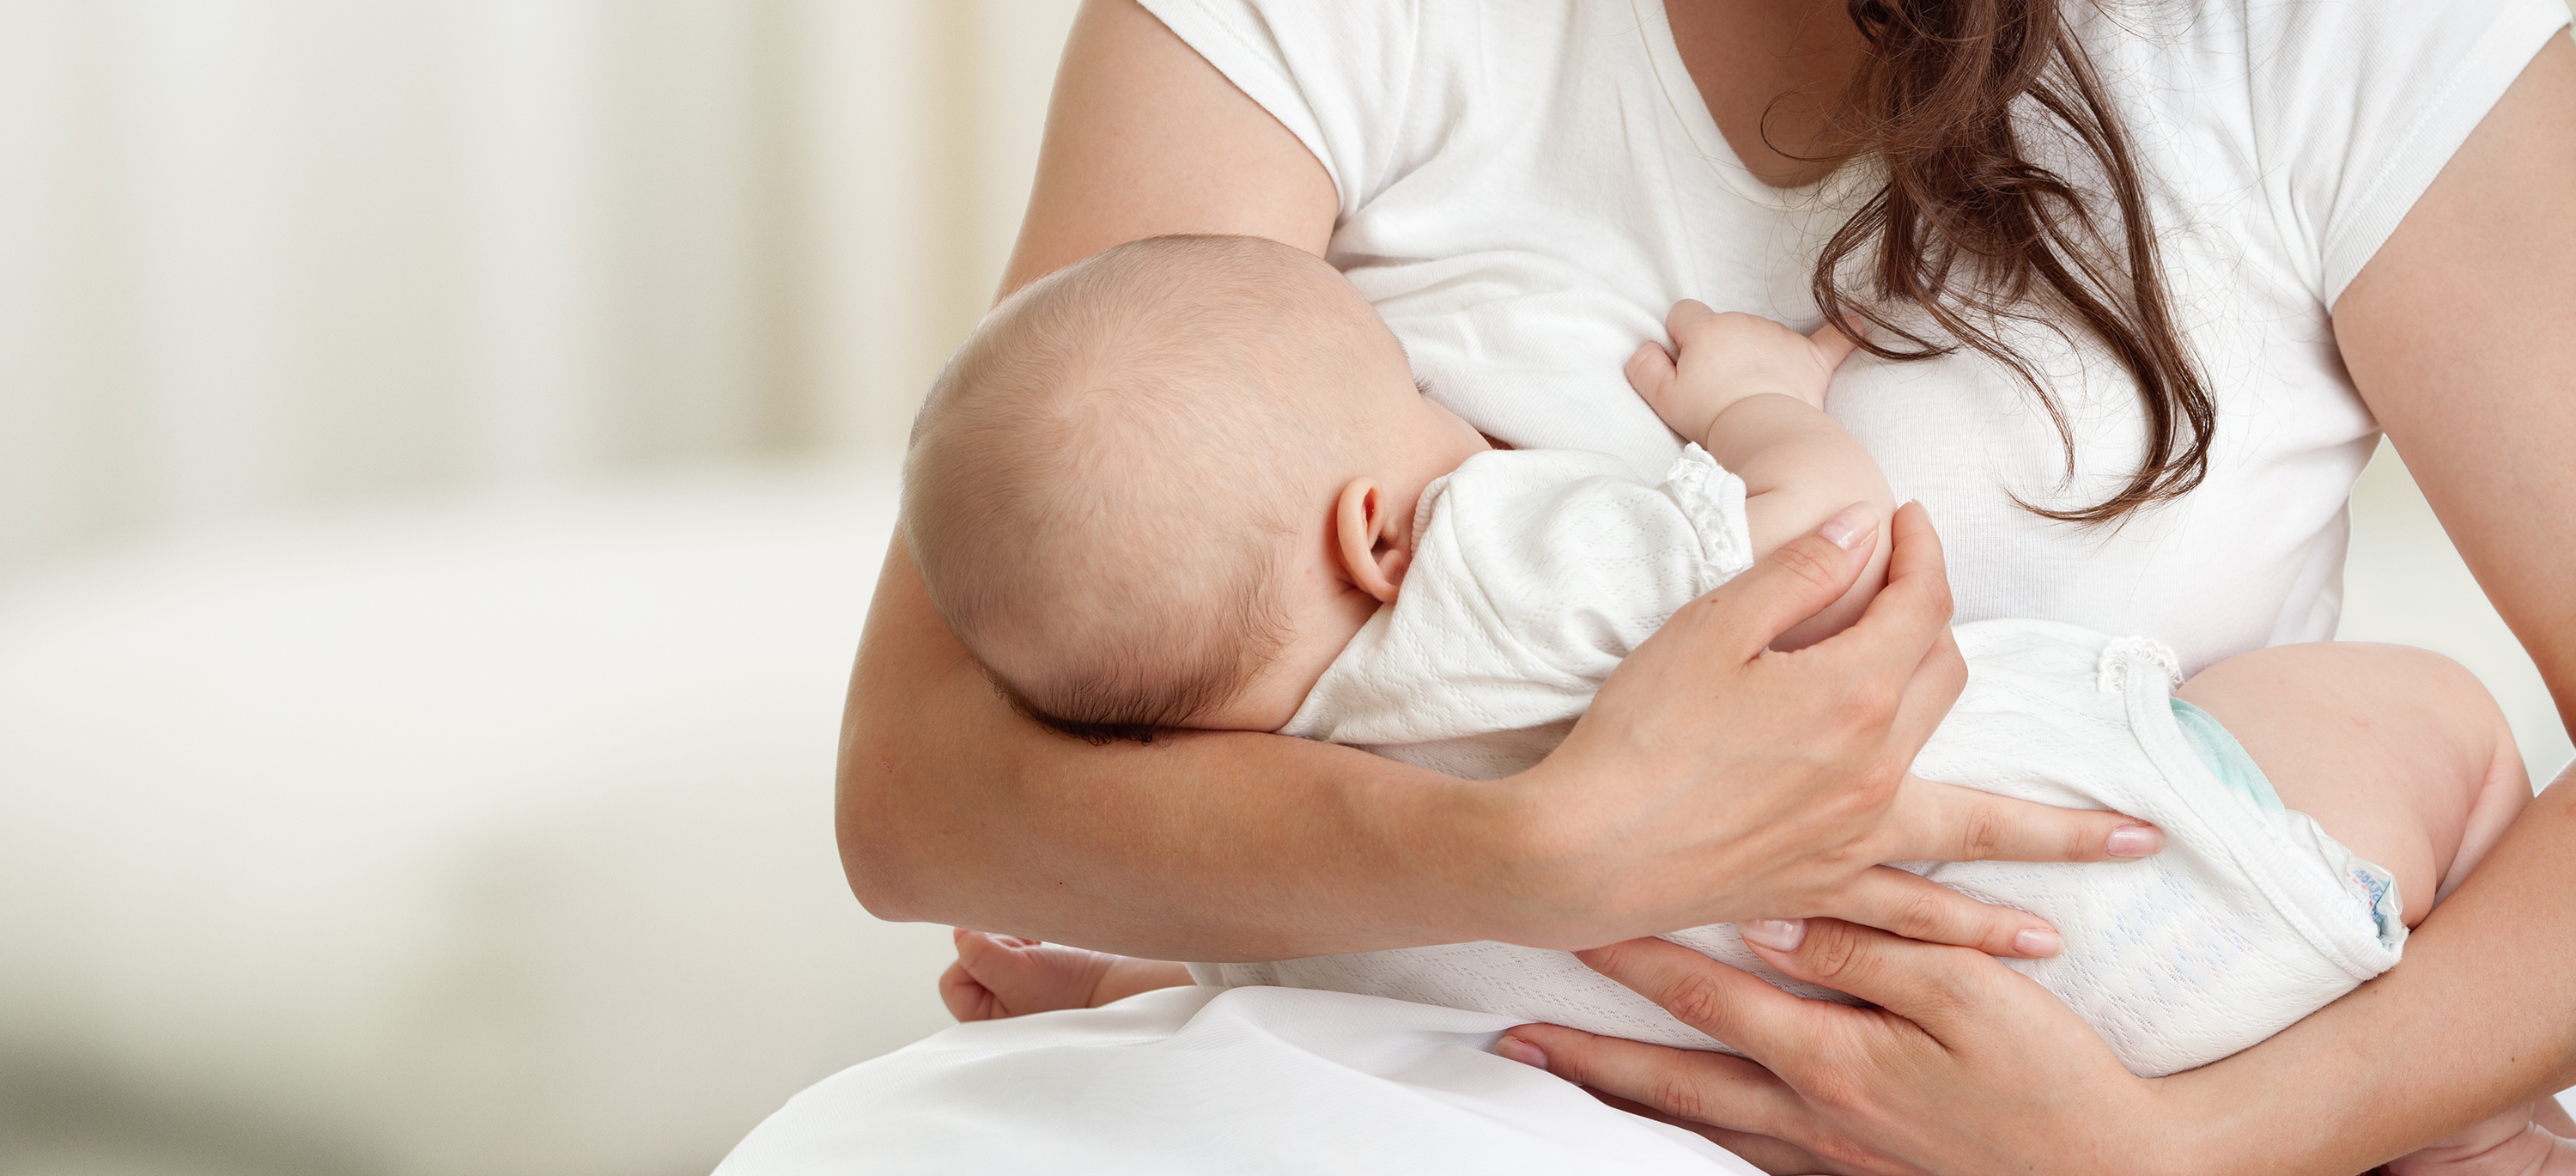 ٨ عوامل تساعد على إنجاح الرضاعة الطبيعية منذ ولادة طفلك